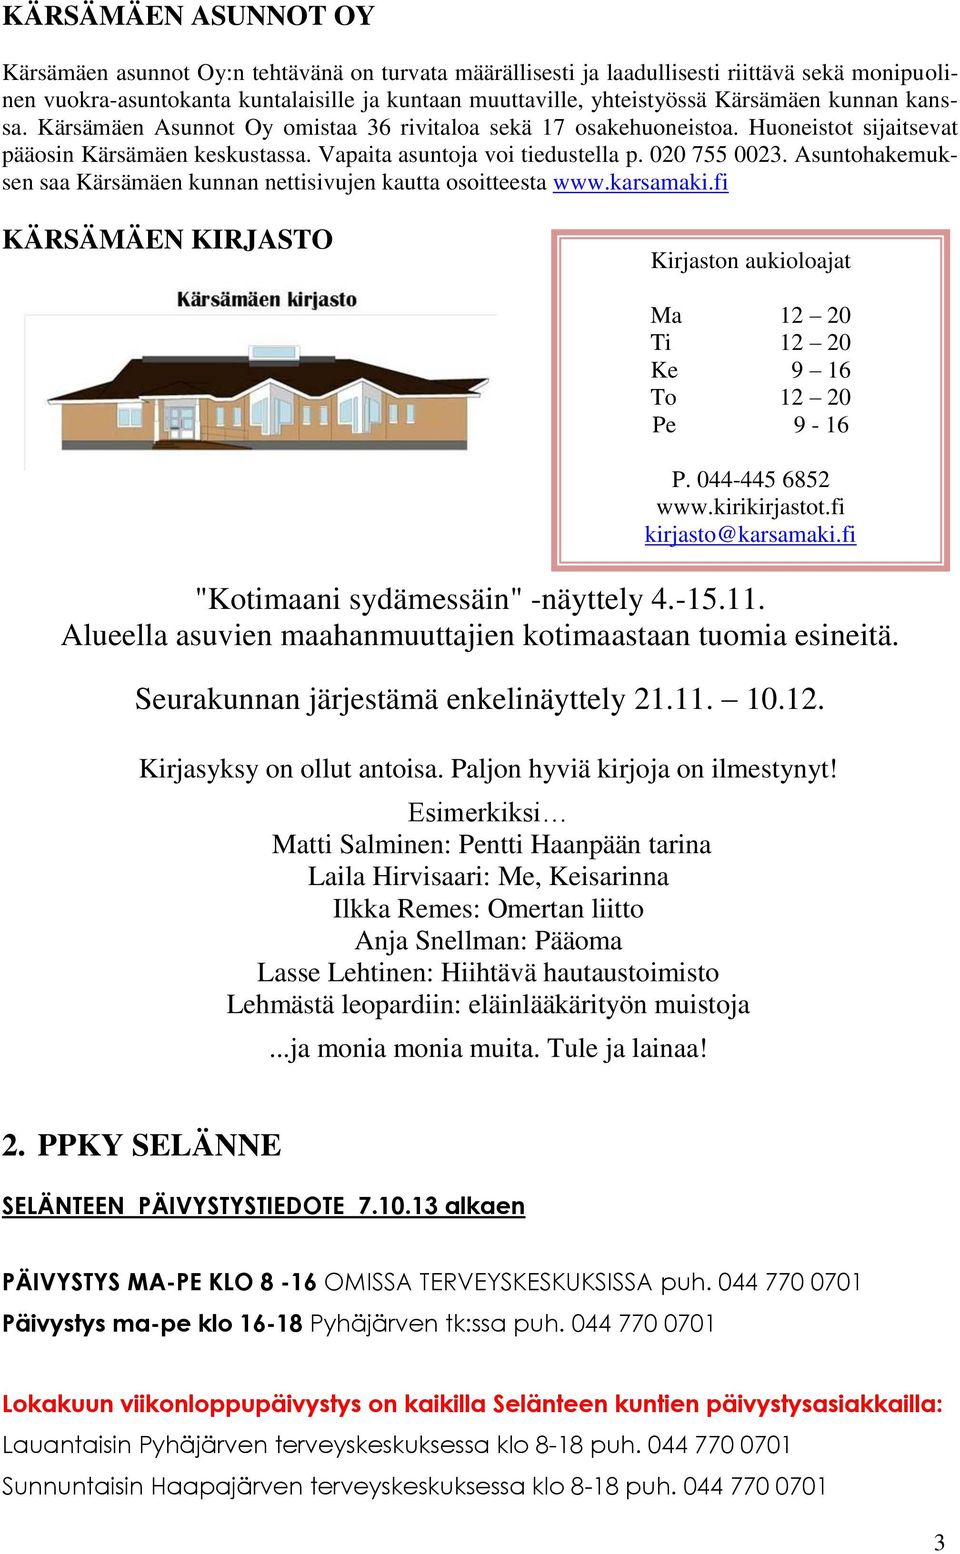 Asuntohakemuksen saa Kärsämäen kunnan nettisivujen kautta osoitteesta www.karsamaki.fi KÄRSÄMÄEN KIRJASTO Kirjaston aukioloajat Ma 12 20 Ti 12 20 Ke 9 16 To 12 20 Pe 9-16 P. 044-445 6852 www.